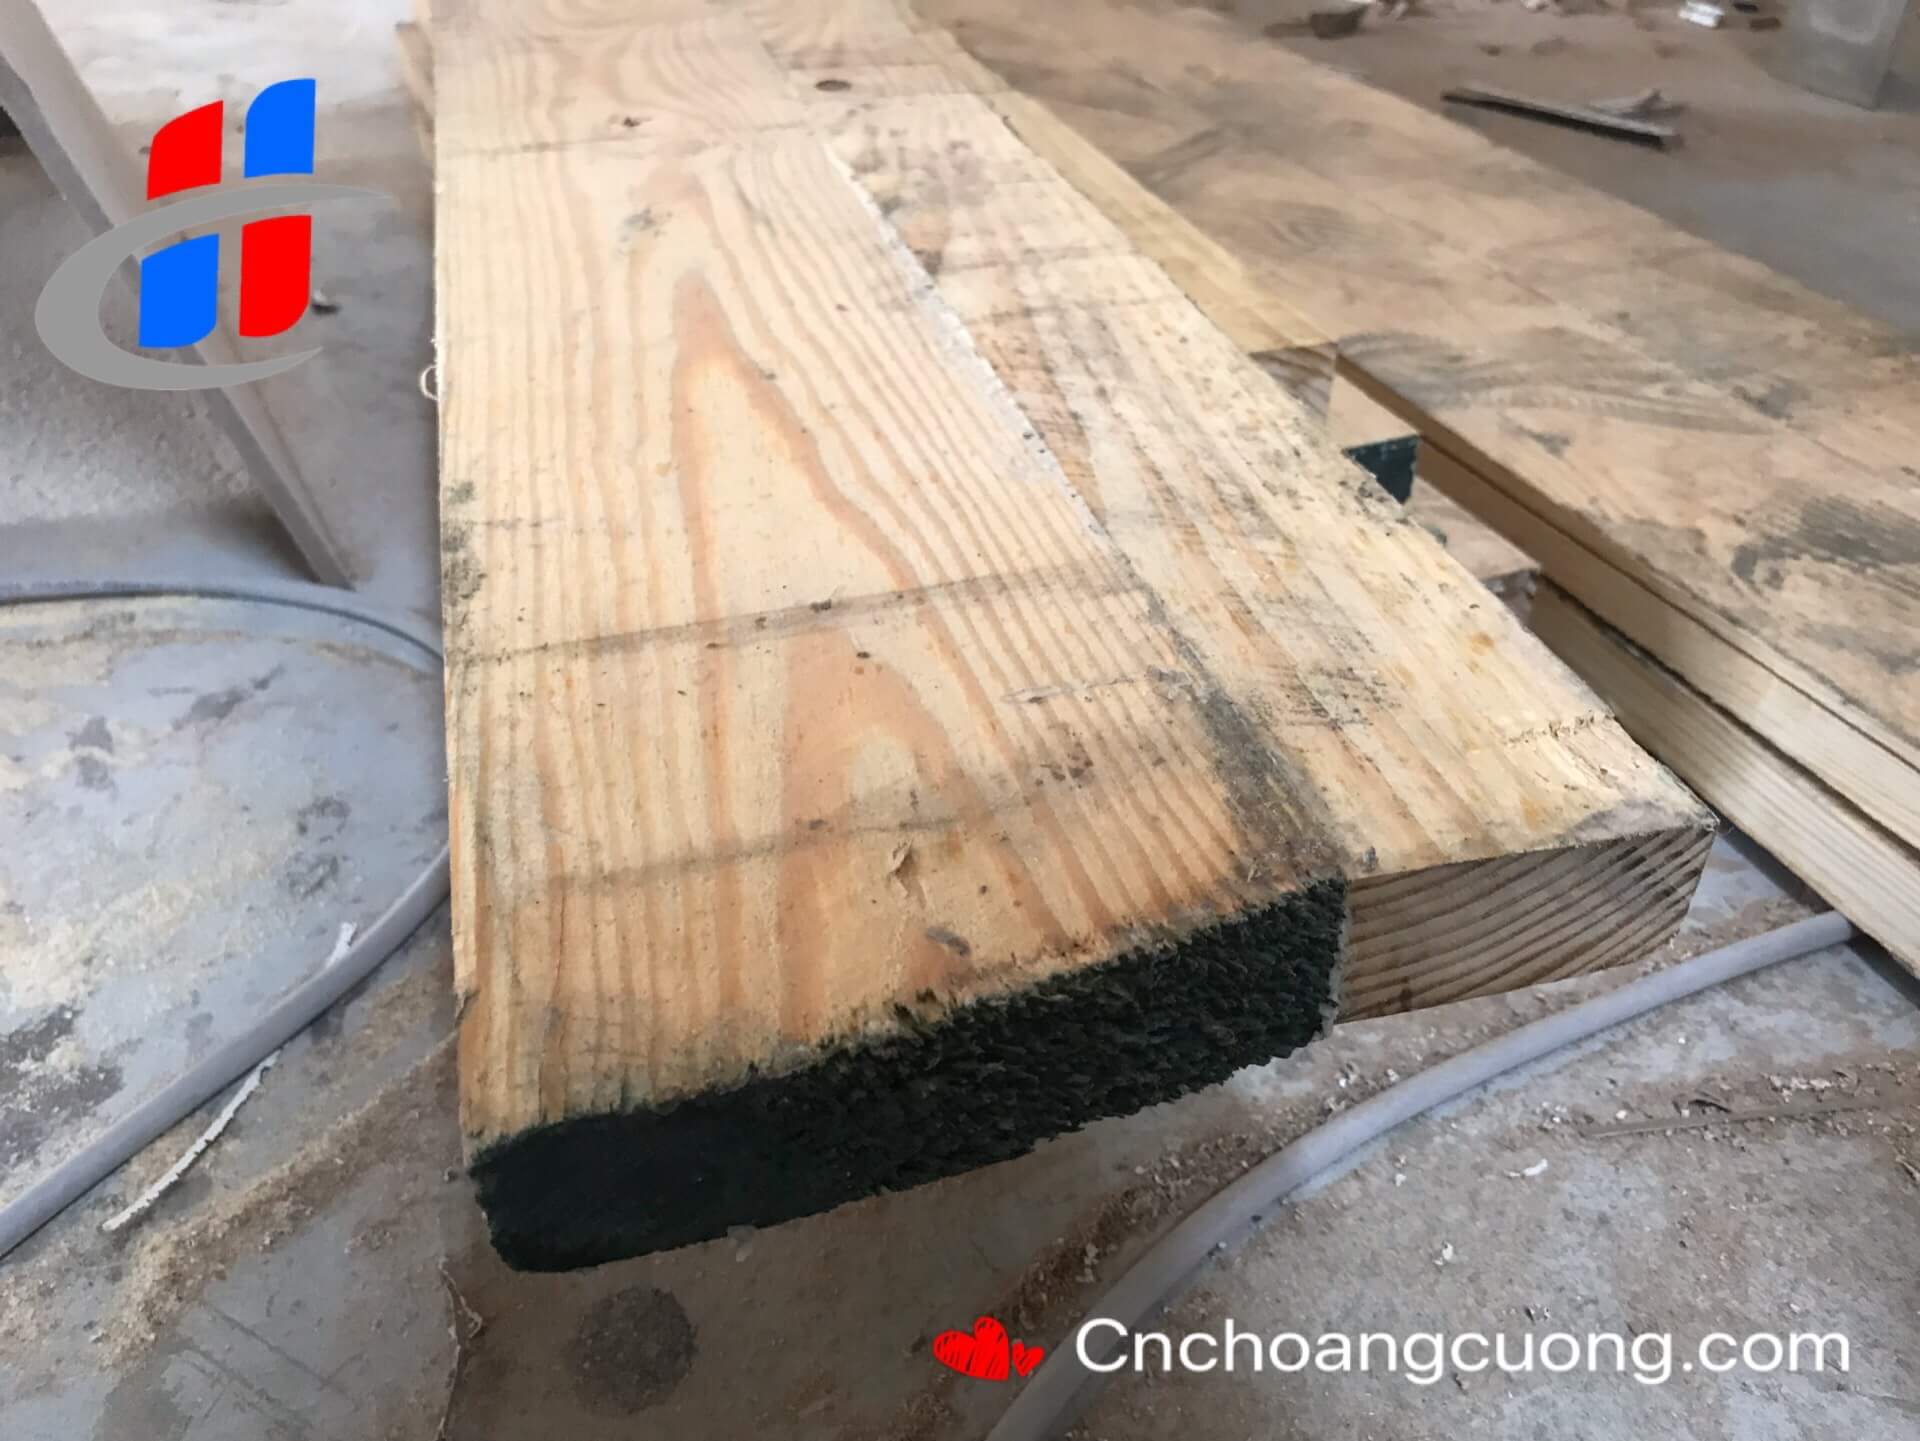 https://cnchoangcuong.com/product/may-ghep-ngang-cao-tan-hc2500/